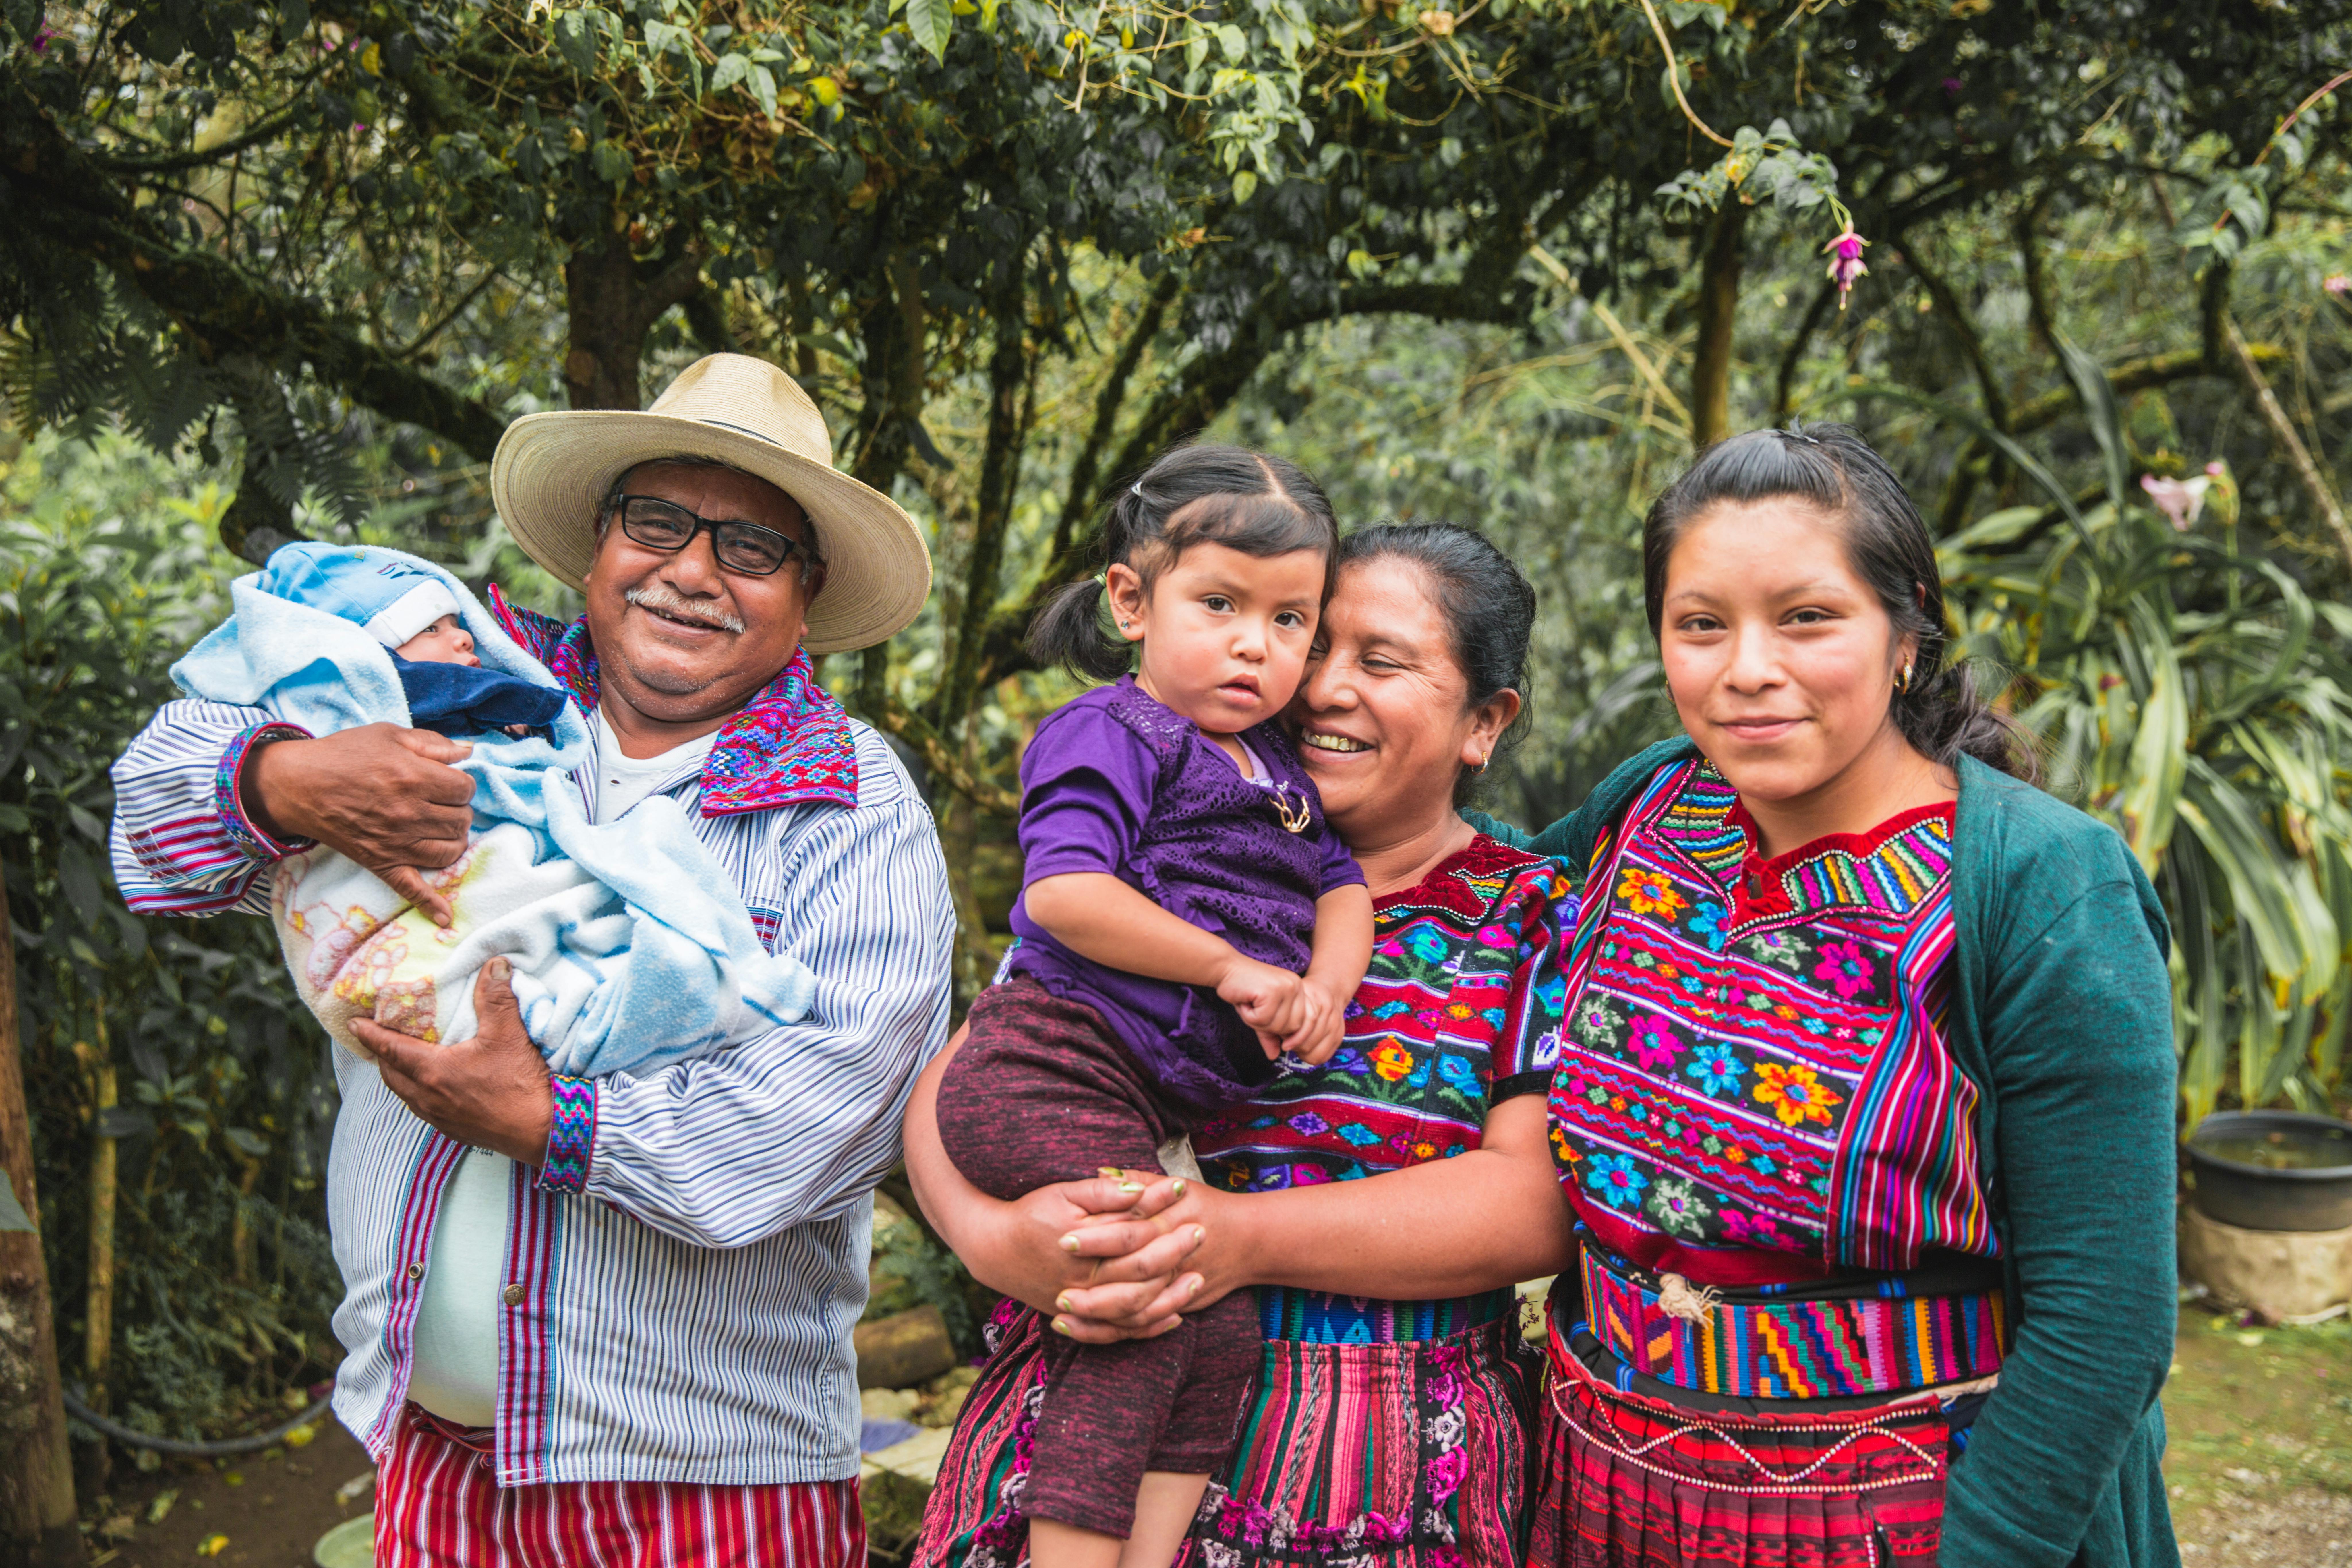 Hilary Cruz Jerónimo (3 anni) e Isan Cruz Jerónimo (6 mesi) sono in braccio ai loro nonni con accanto la mamma Maria Jeronimo Jimenez, mentre posano per una foto. Fanno parte della comunità indigena dei Chicoy, in Guatemala: qui i nonni svolgono un ruolo fondamentale per la vita sociale dei nipotini